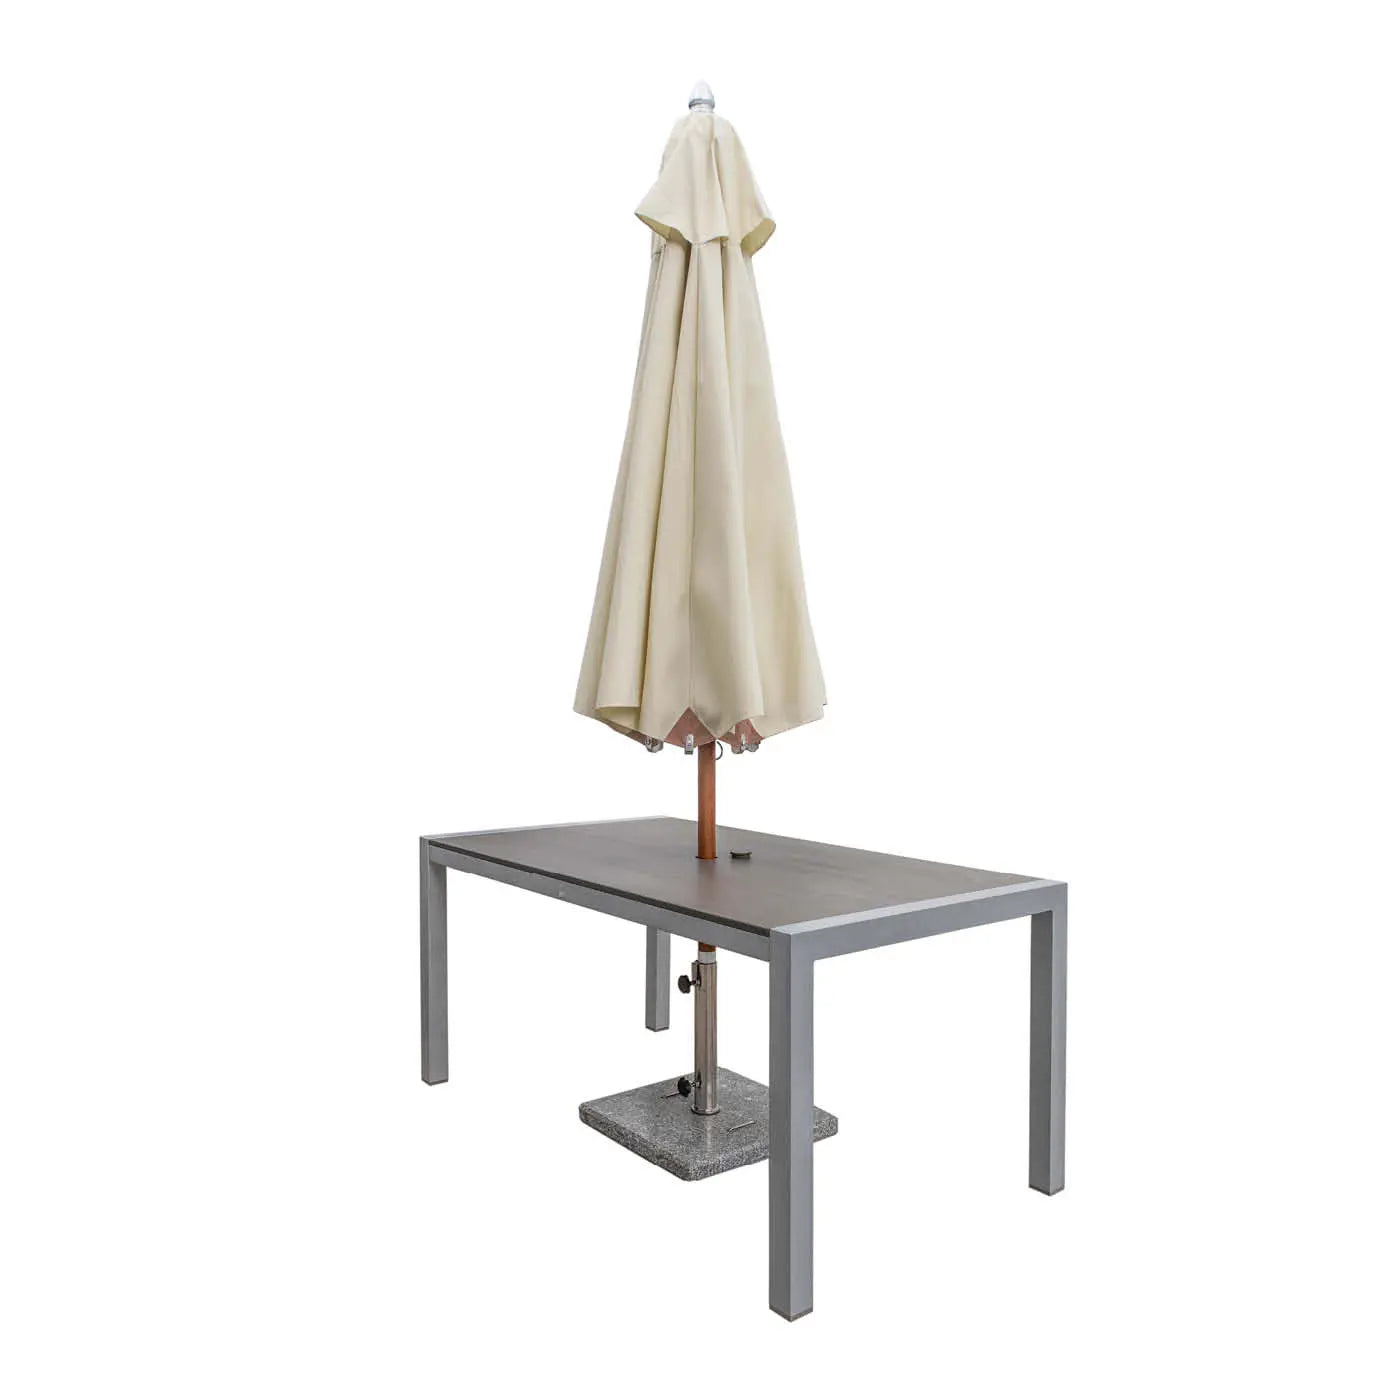 Tisch Kennedy / Stone Grey mit Schirmloch 160 x 90 - bm raumkonzept